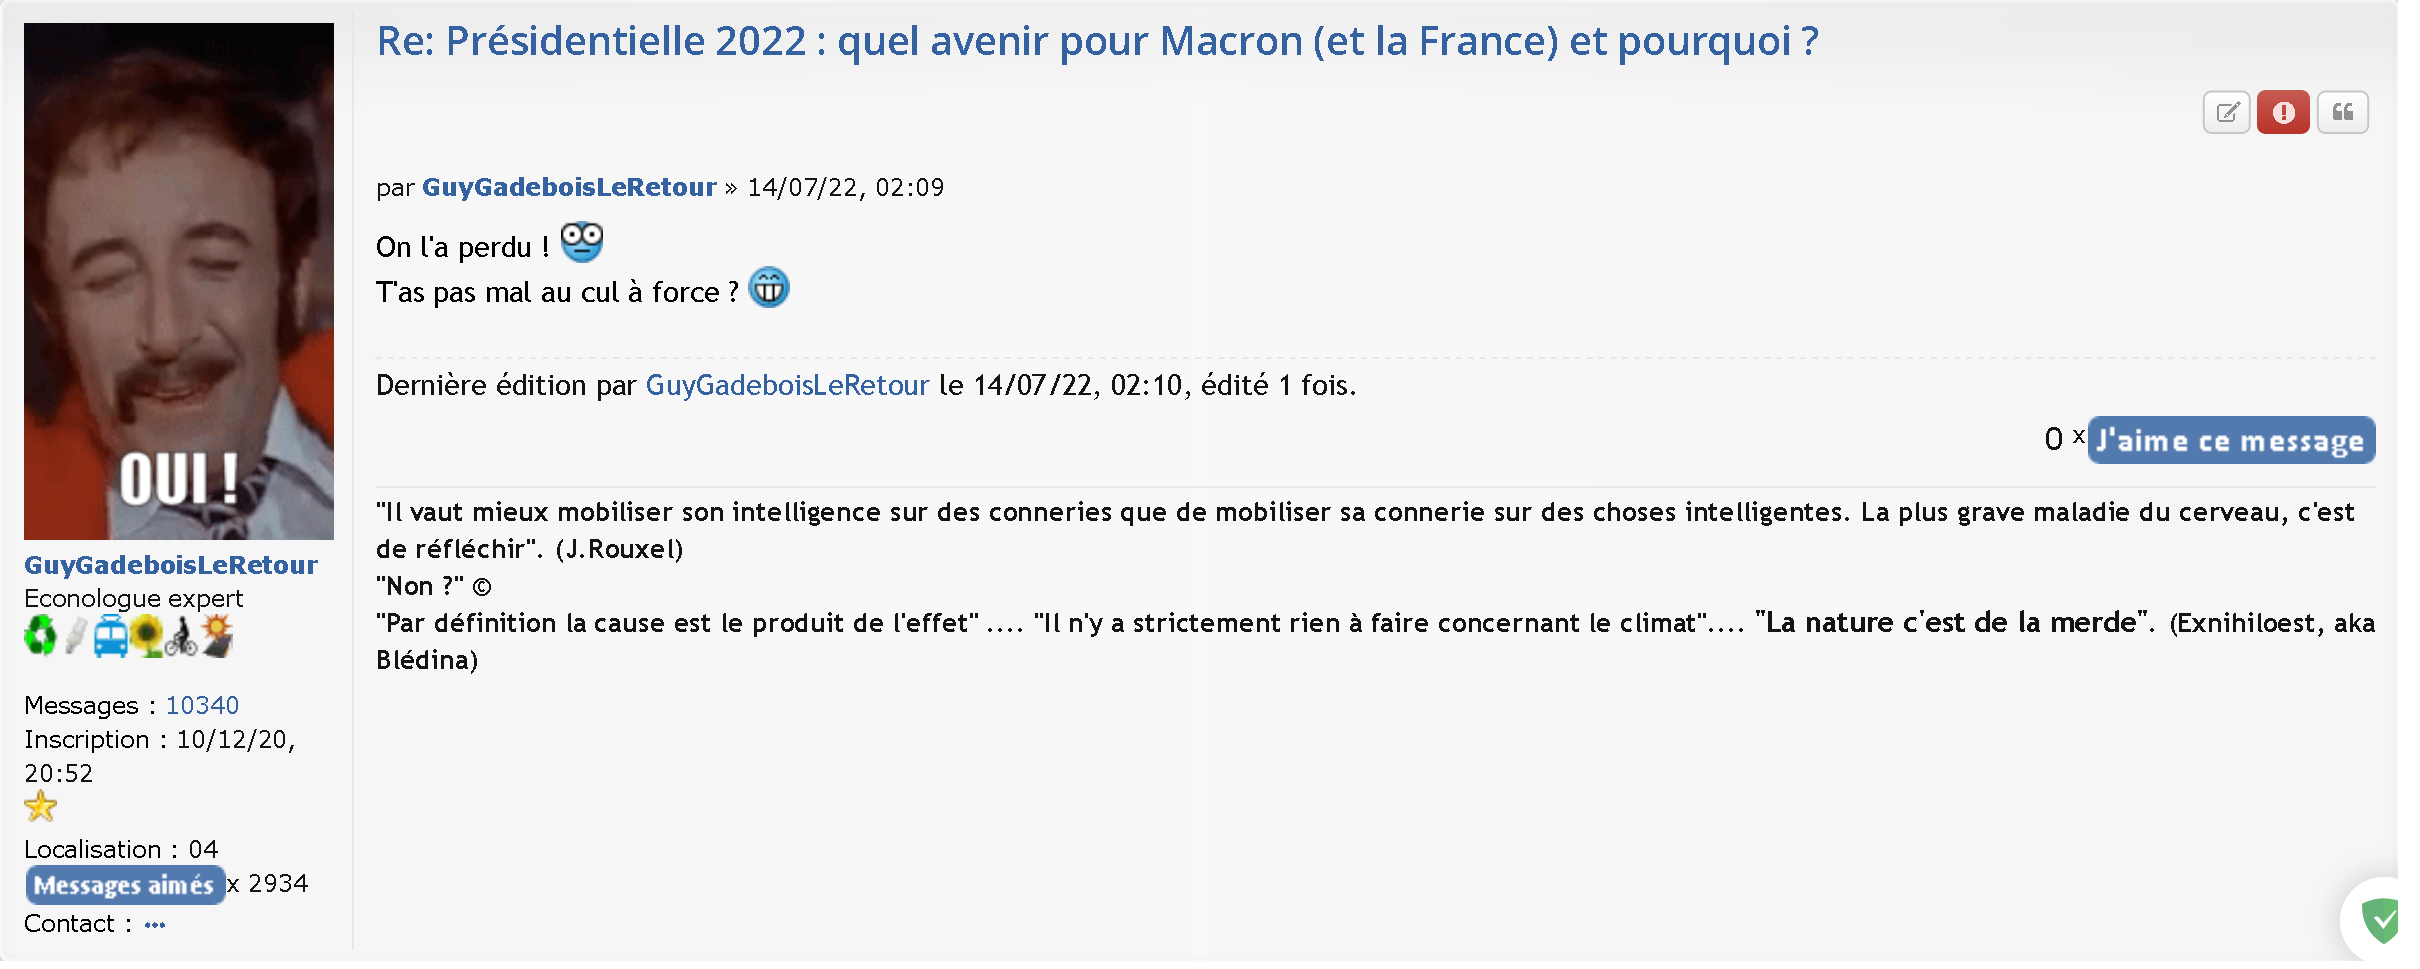 Screenshot 2022-07-14 at 02-10-43 Présidentielle 2022 quel avenir pour Macron (et la France) et pourquoi - Page 289.png